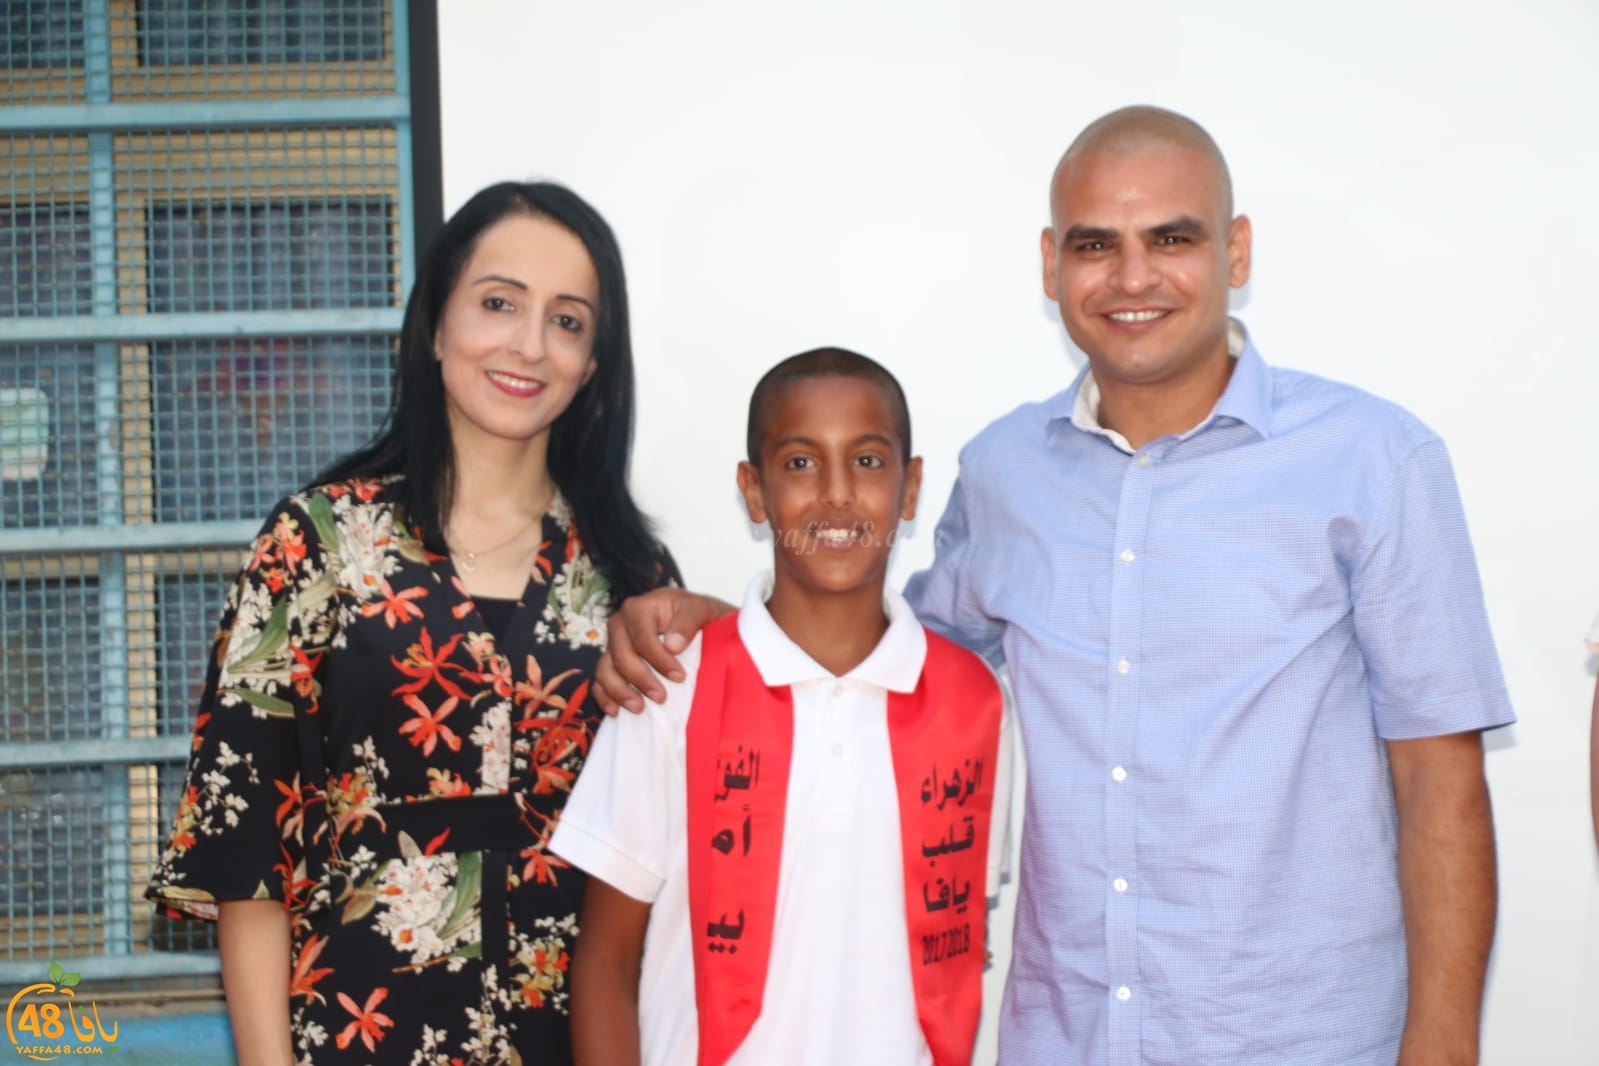 بالصور: مدرسة الزهراء الابتدائية في يافا تحتفل بتخريج طلابها ضمن الفوج الـ12 